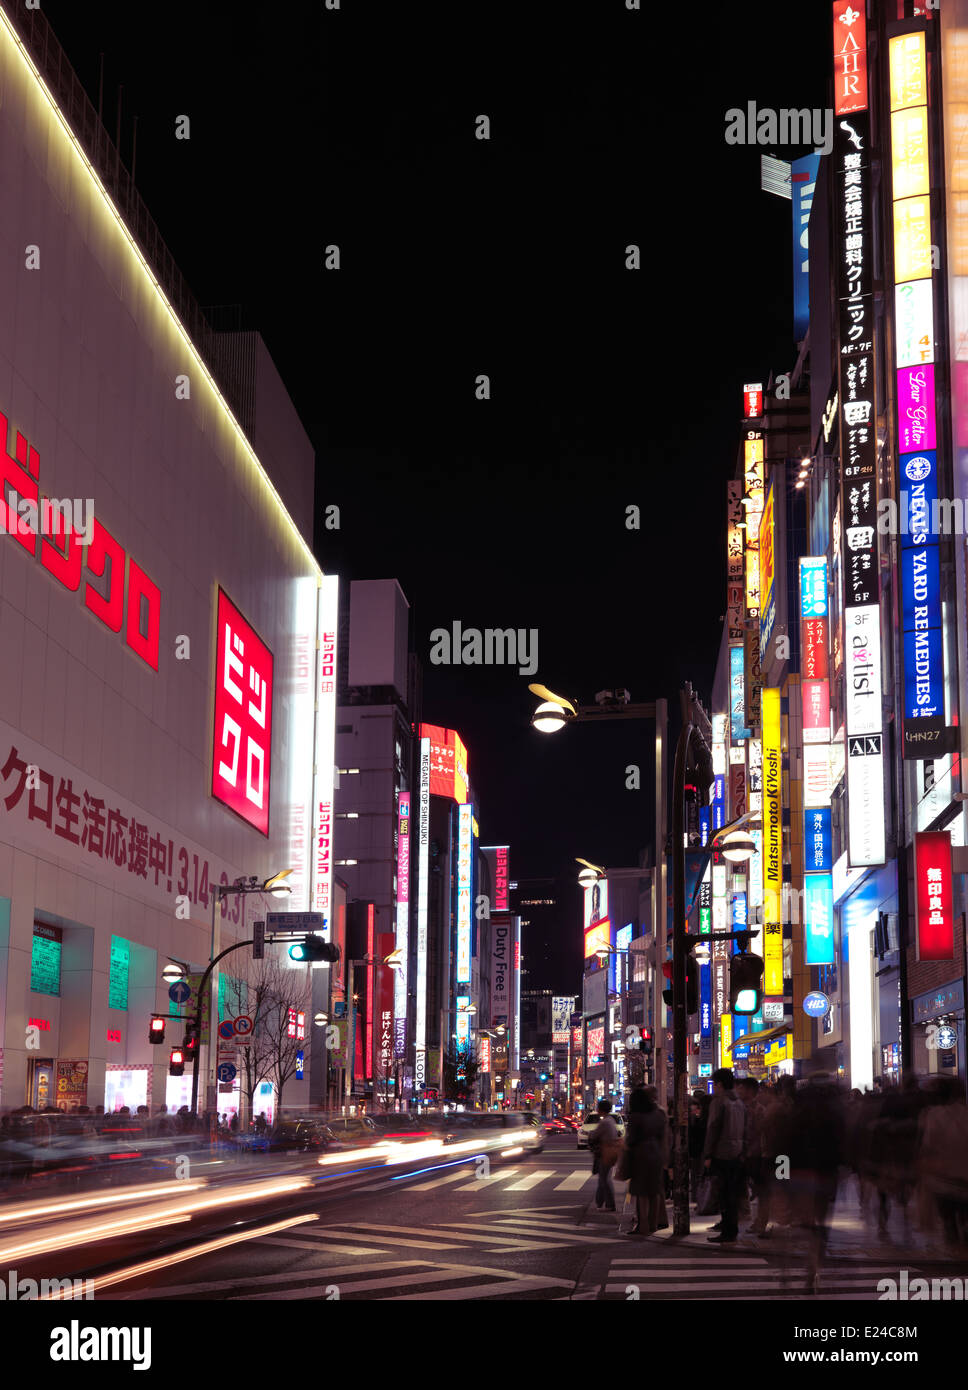 Uniqlo store on Shinjuku dori street. Tokyo nighttime city scenery. Shinjuku, Tokyo, Japan 2014. Stock Photo